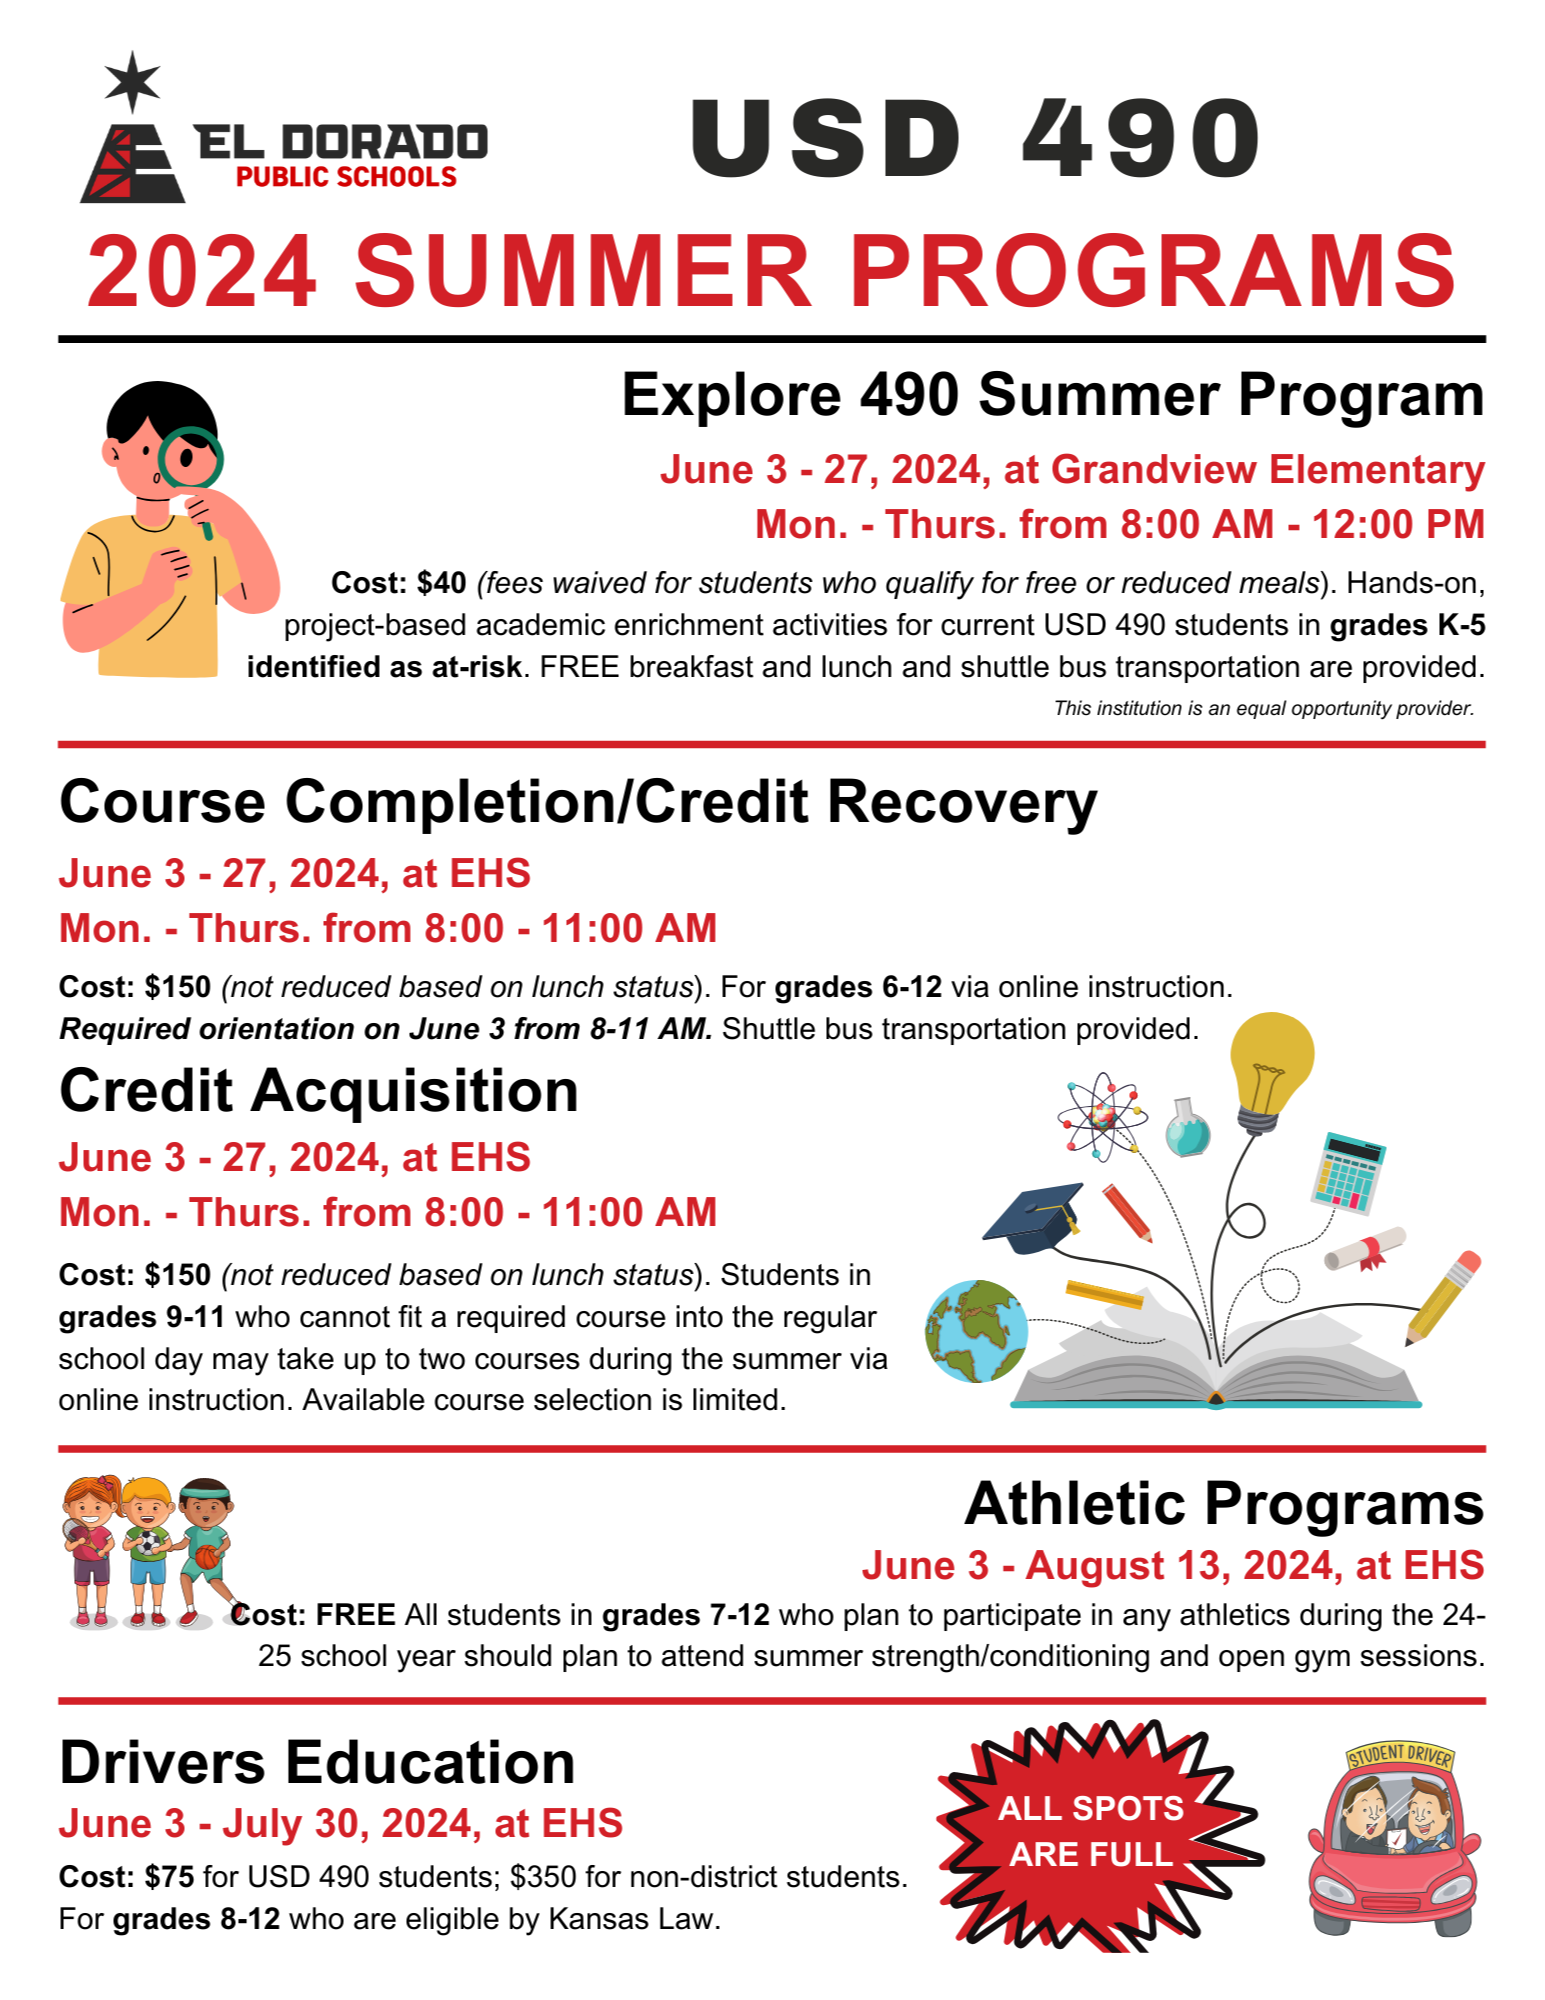 USD 490 Summer Programs